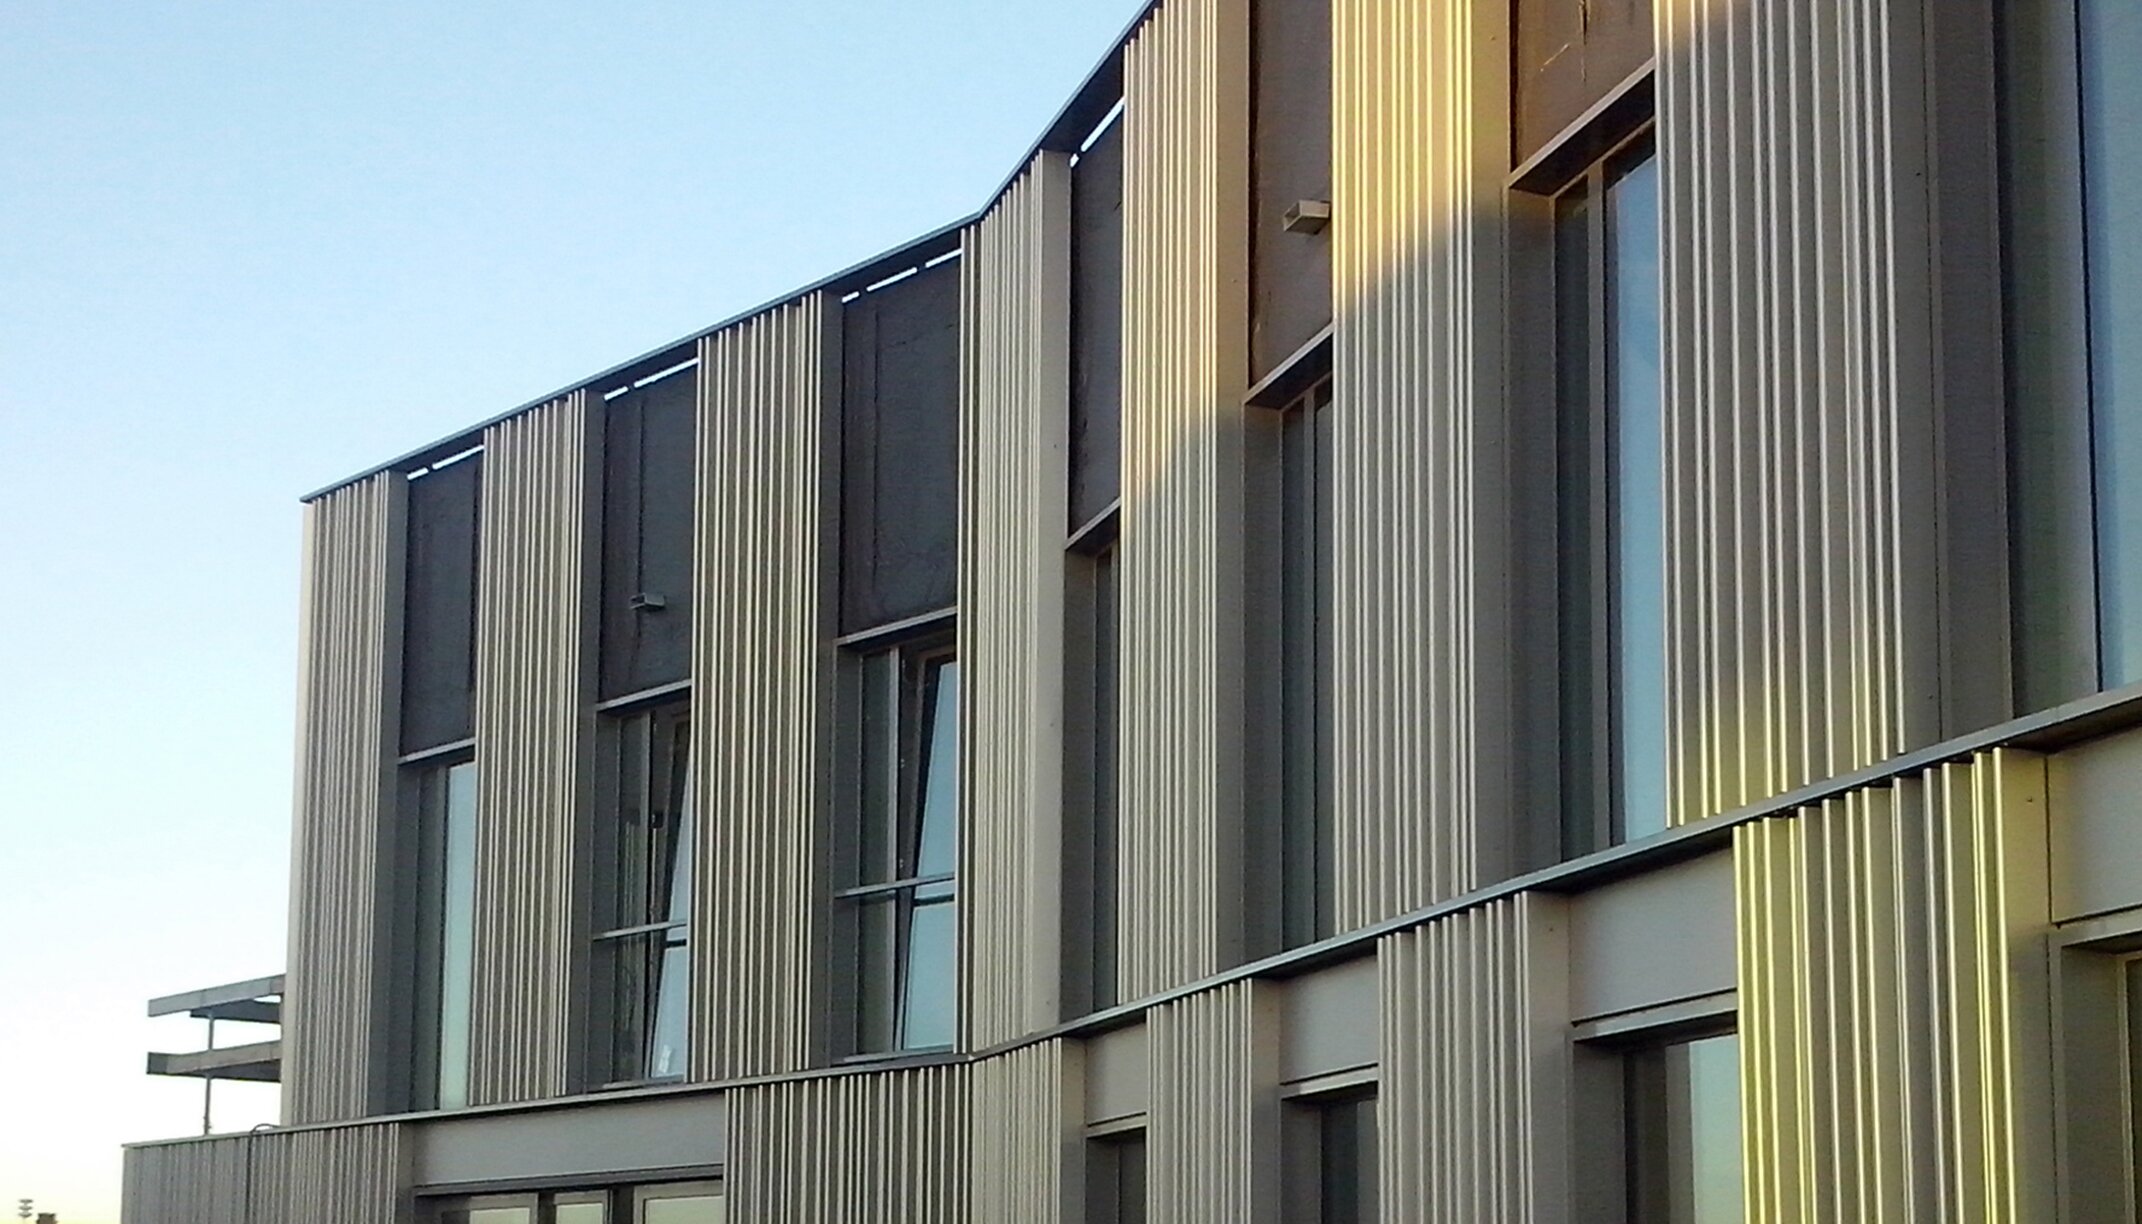 Detailansicht "Cool 63"; sehenswürdiger Fassadendesign aus Aluminium